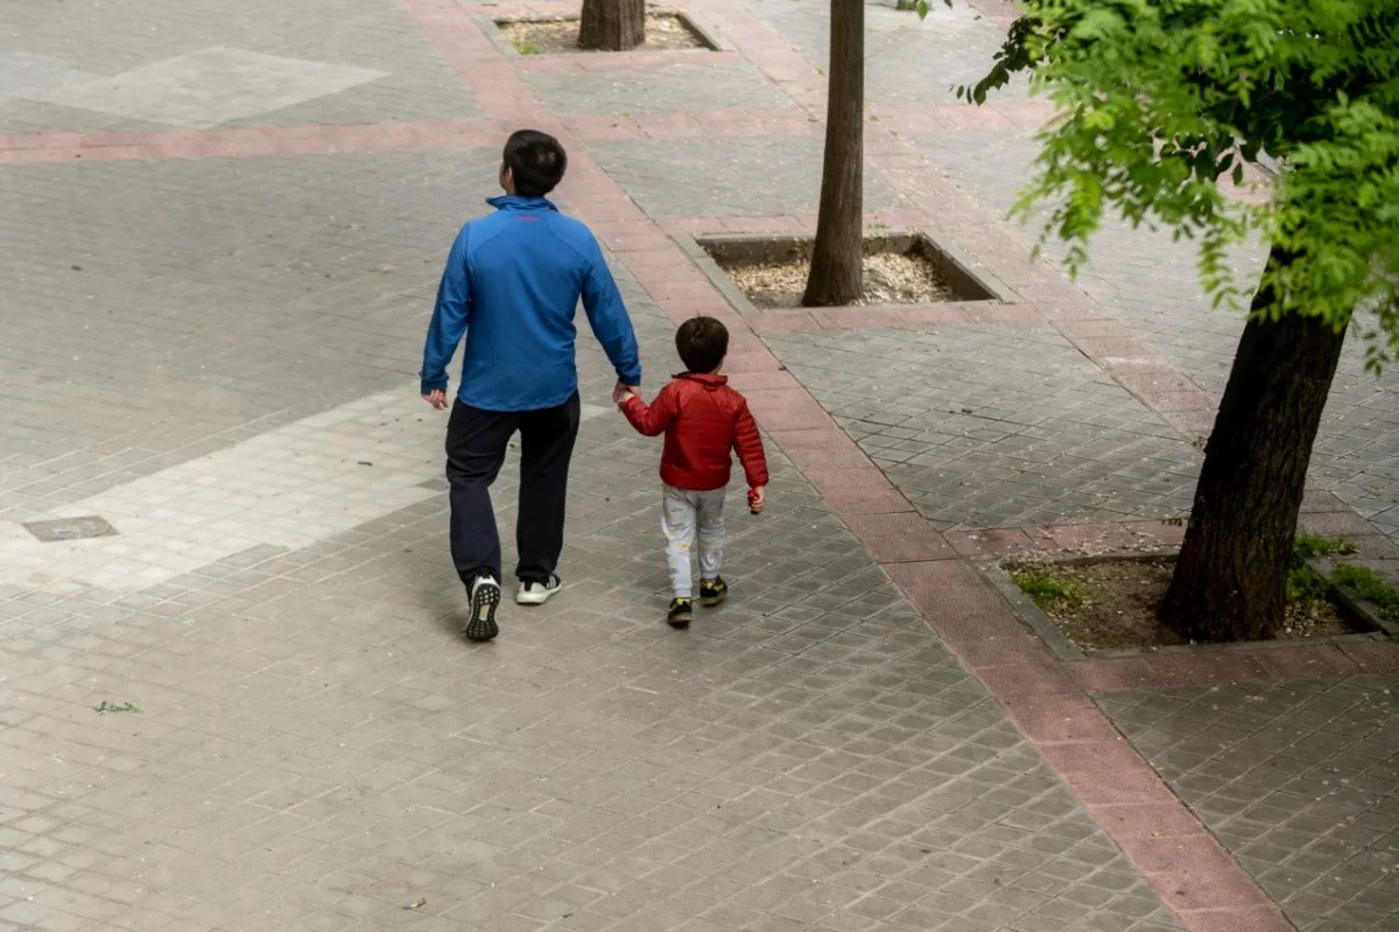 Una instantánea del primer día que se permitió el paseo de los niños como medida de desconfinamiento (José Luis Pindado)